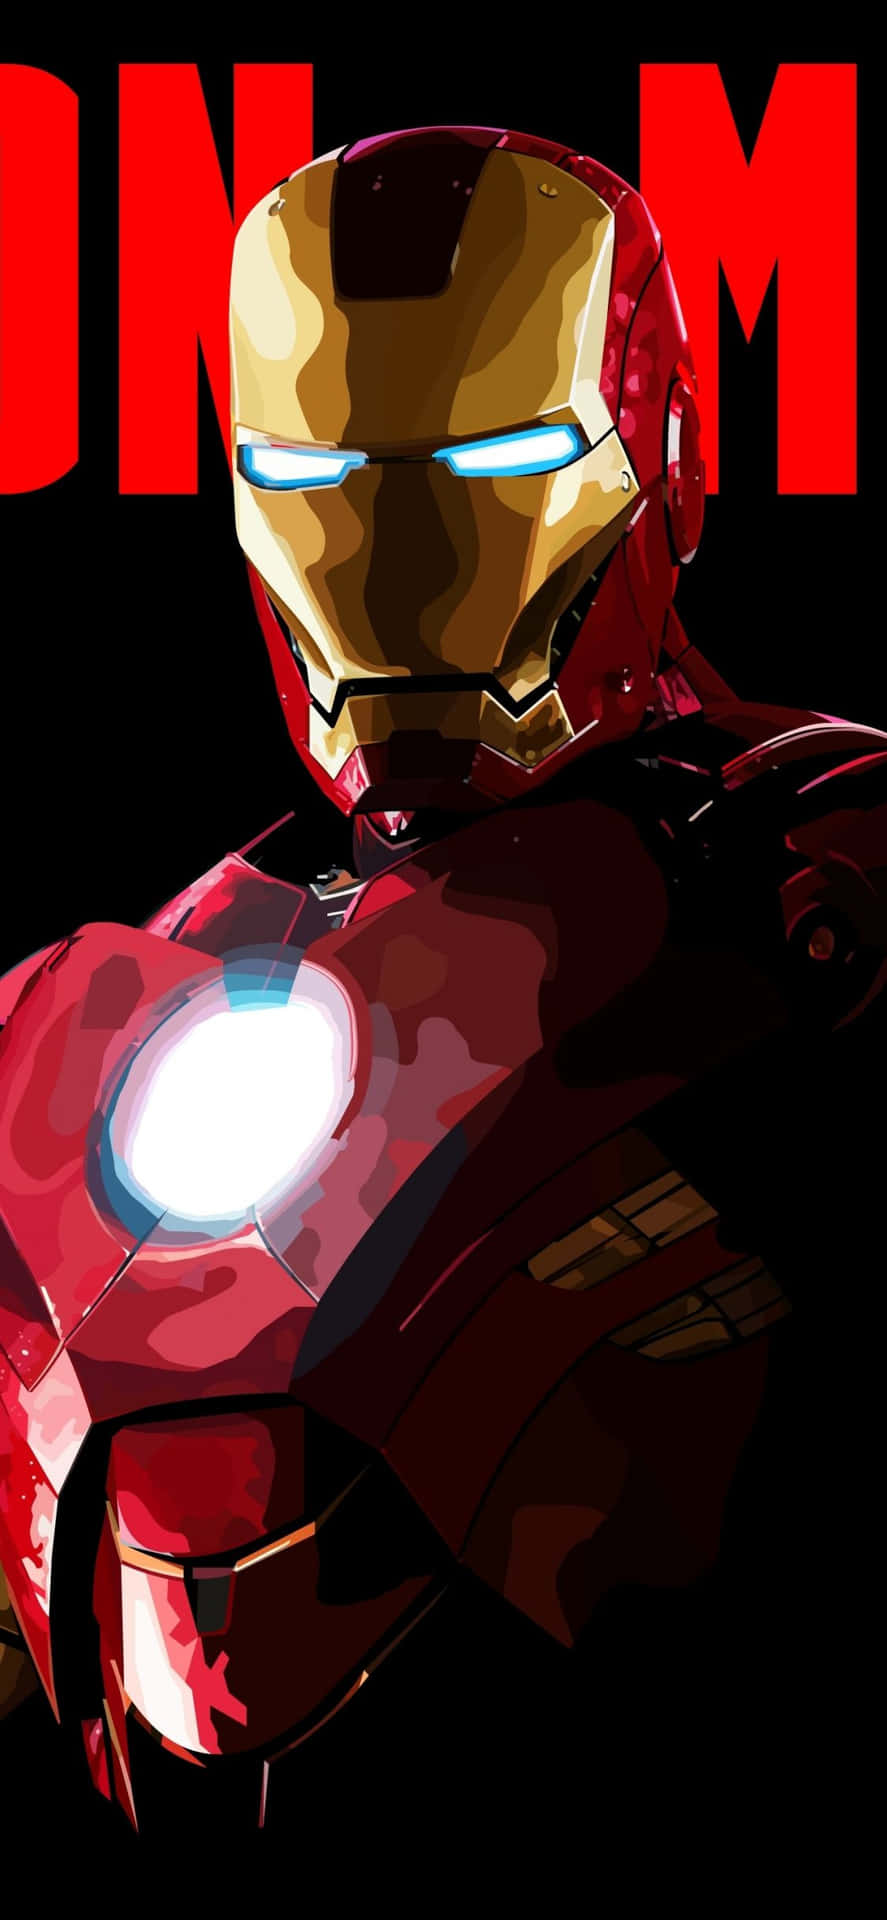 Actualizatu Teléfono Con El Fondo De Pantalla De Iron Man Para Iphone X Fondo de pantalla